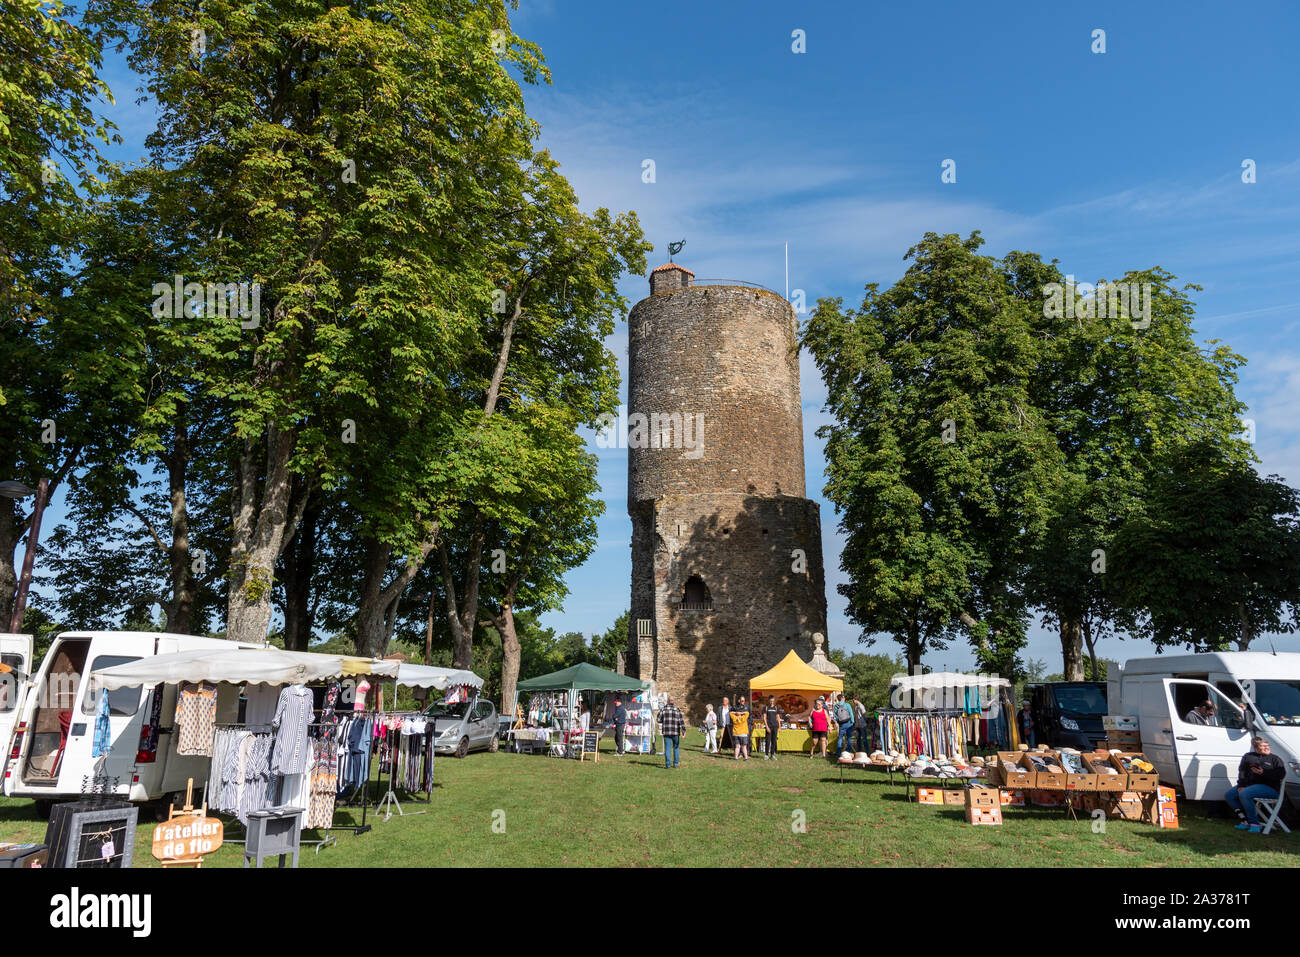 La cittadina medievale di Vouvant in Vandea regione della Francia Foto Stock